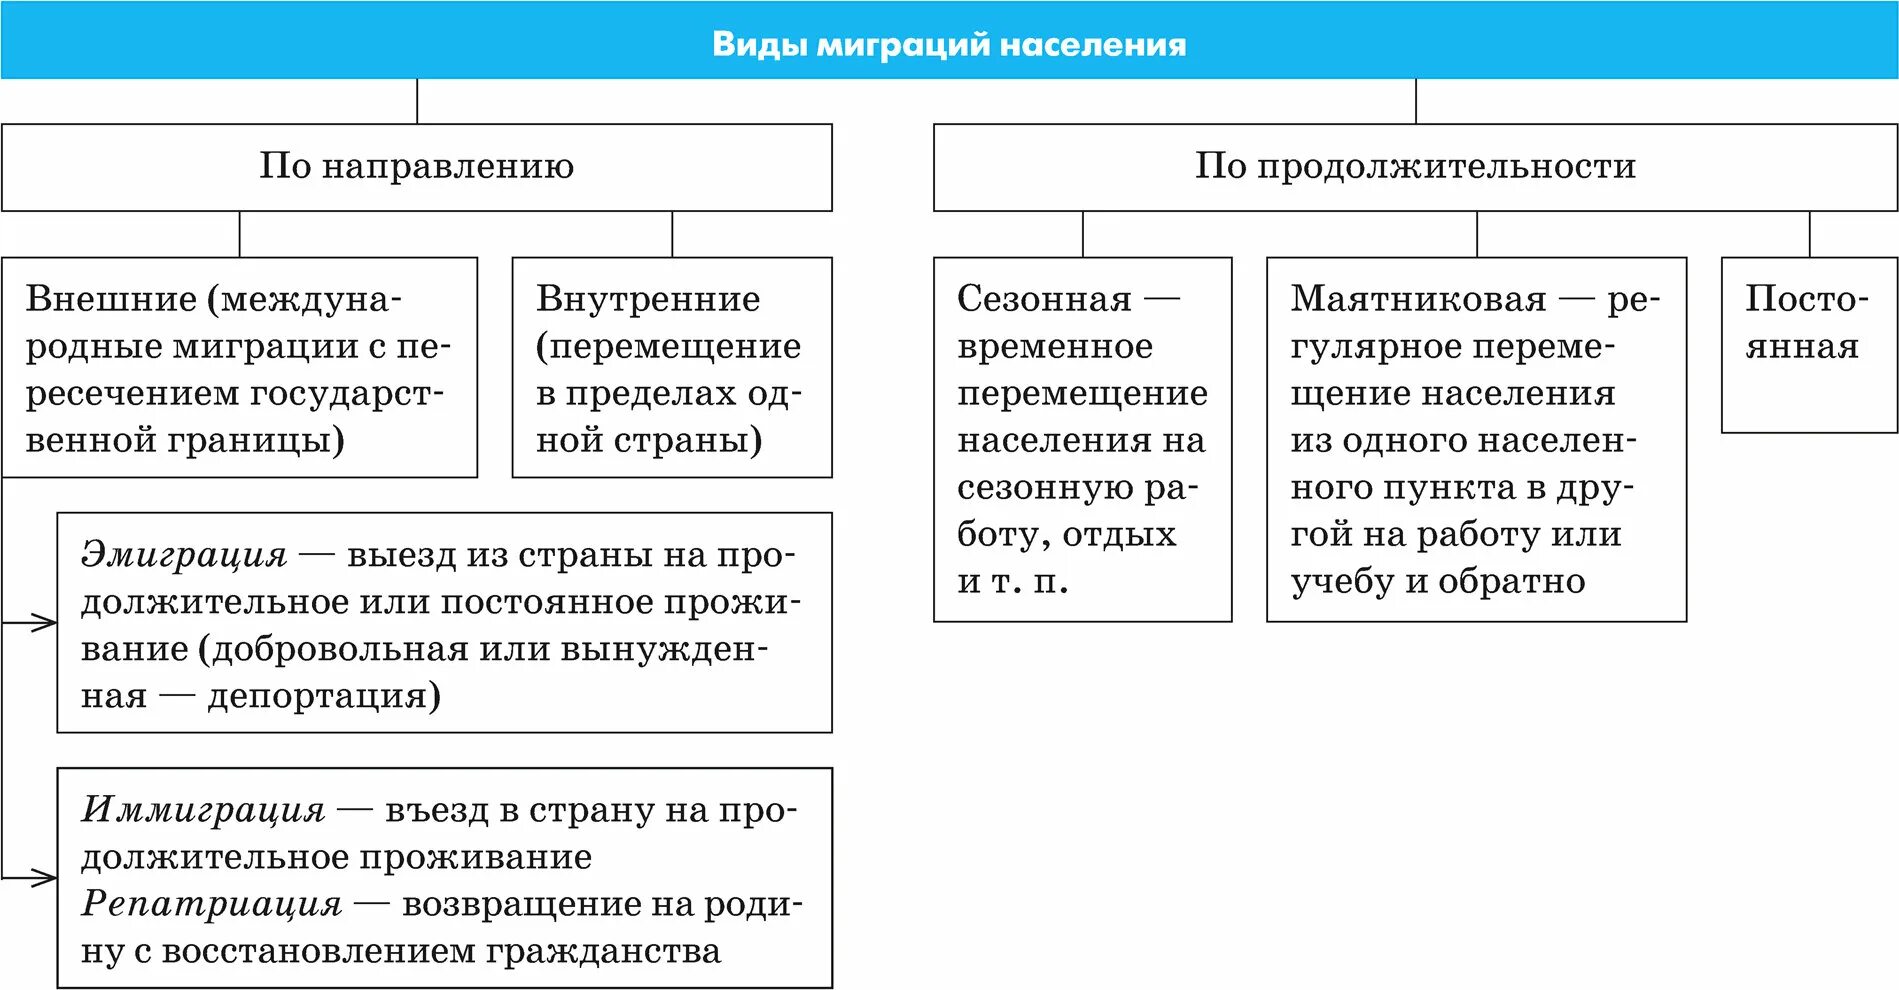 Внешняя и внутренняя миграция. Миграция внешняя и внутренняя таблица. Сезонная и маятниковая миграция. Внутренние миграции в России таблица.